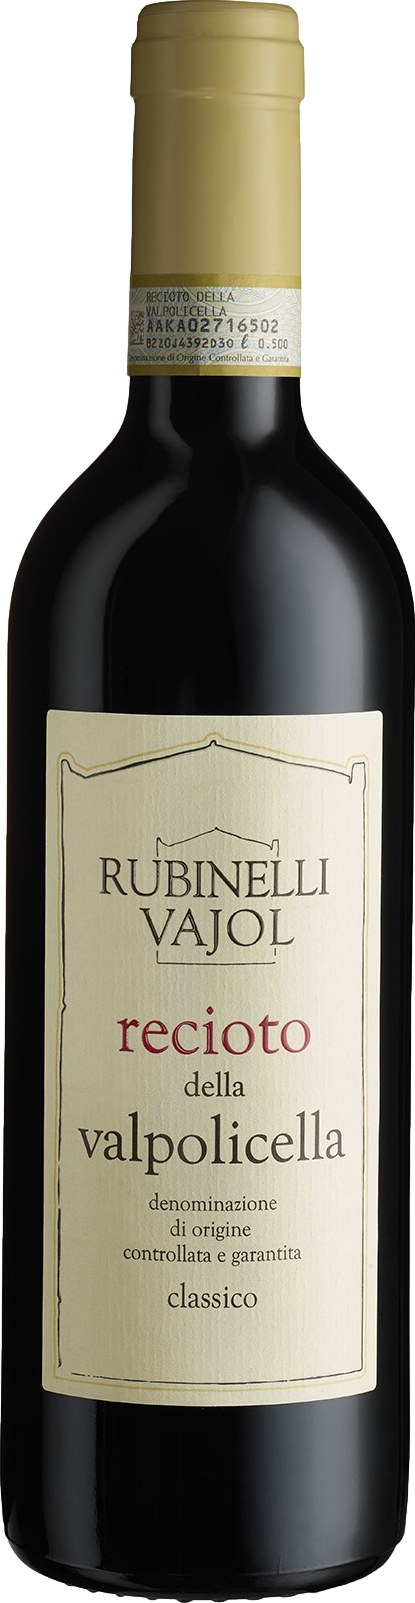 Rubinelli Vajol Recioto della Valpolicella Classico 2015 Červené 14.0% 0.5 l